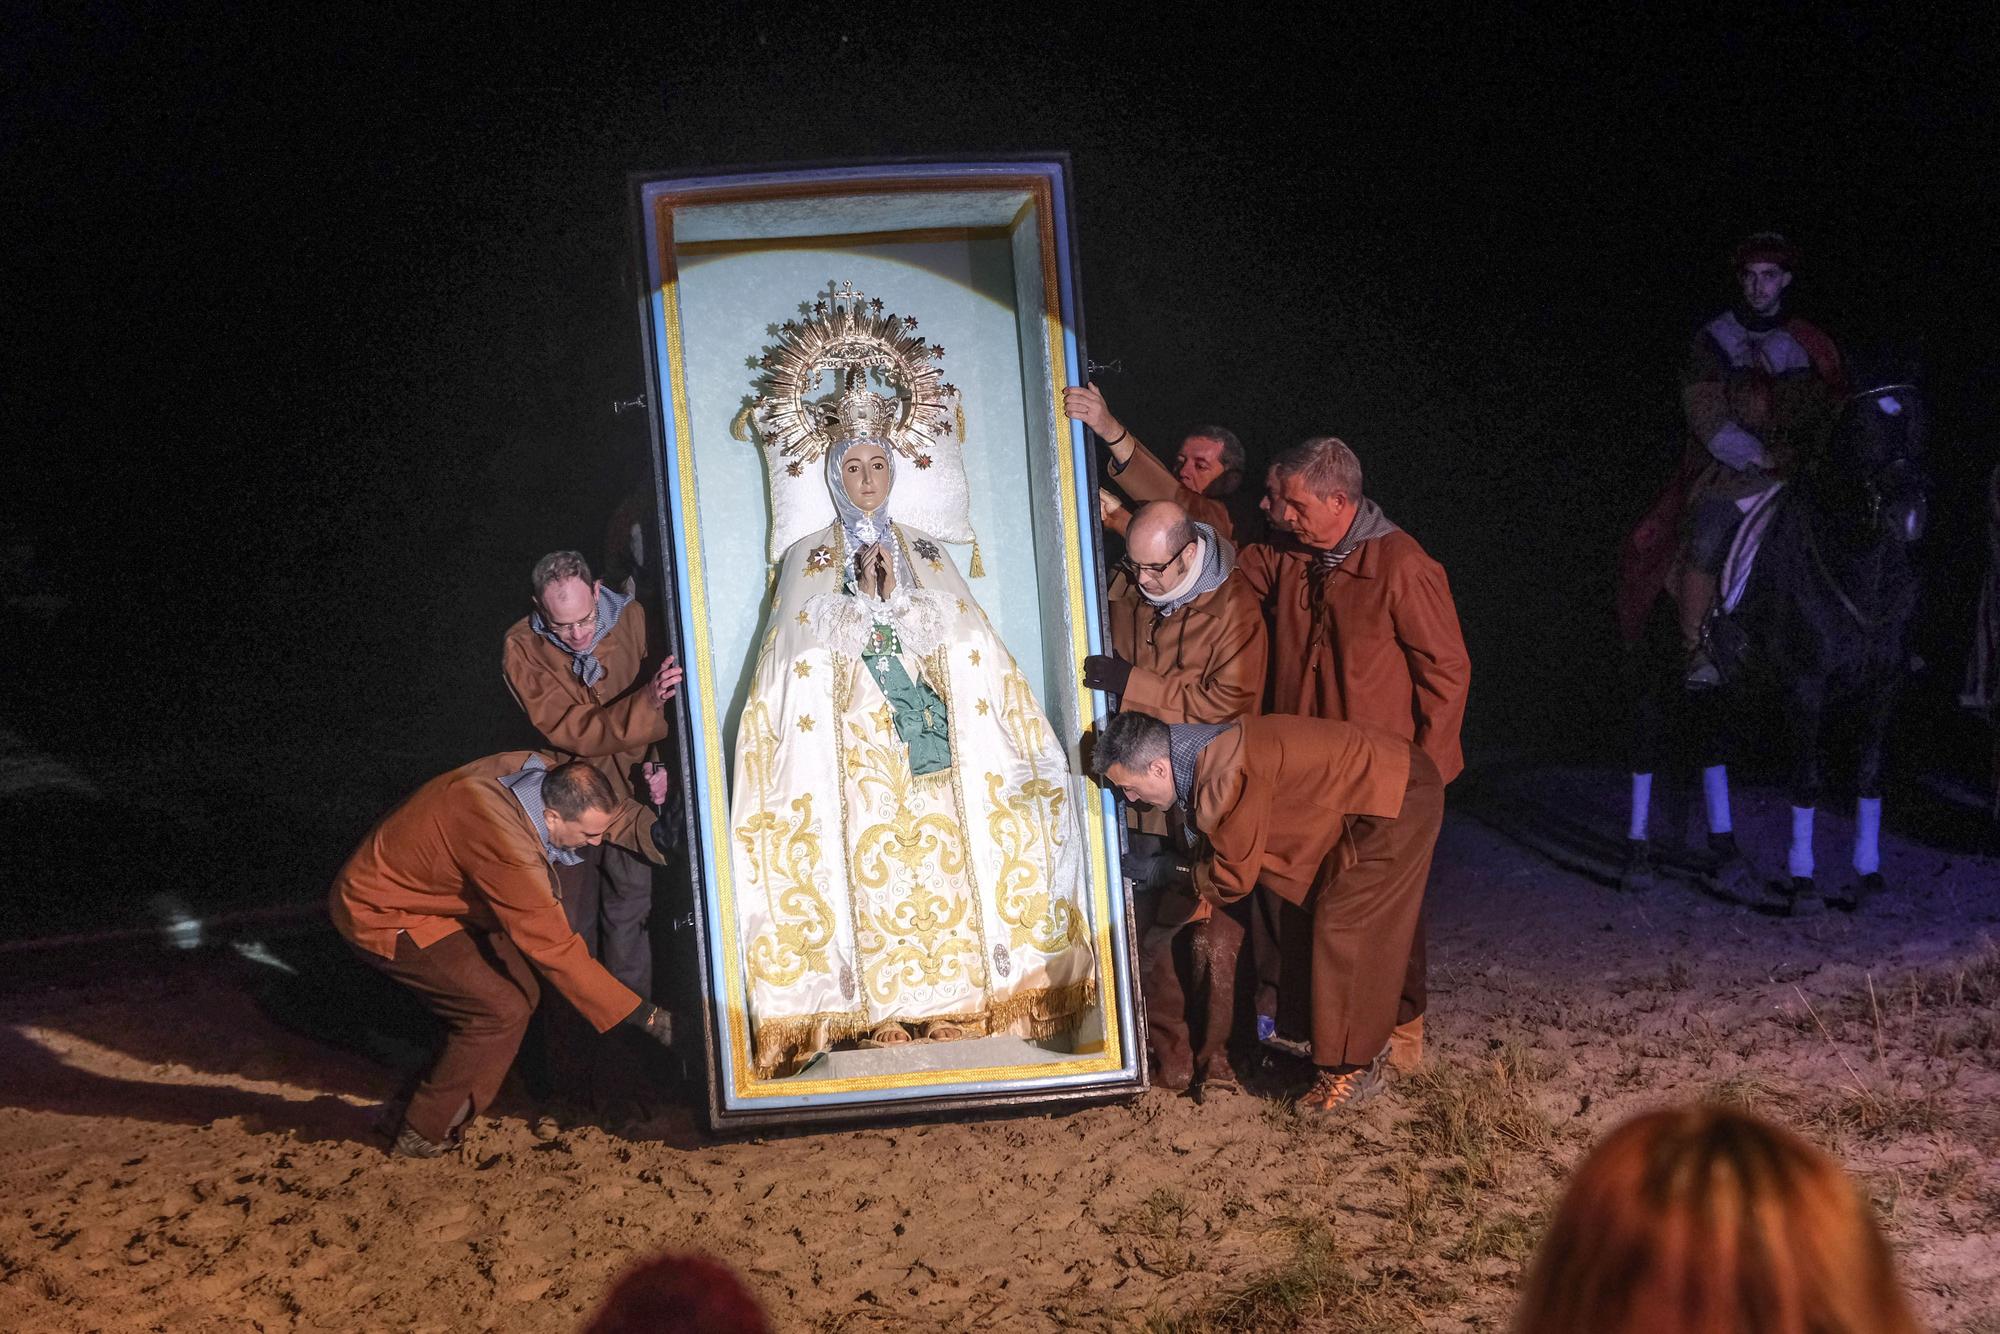 Así se ha vivido el hallazgo de la Virgen en la playa del Tmarit